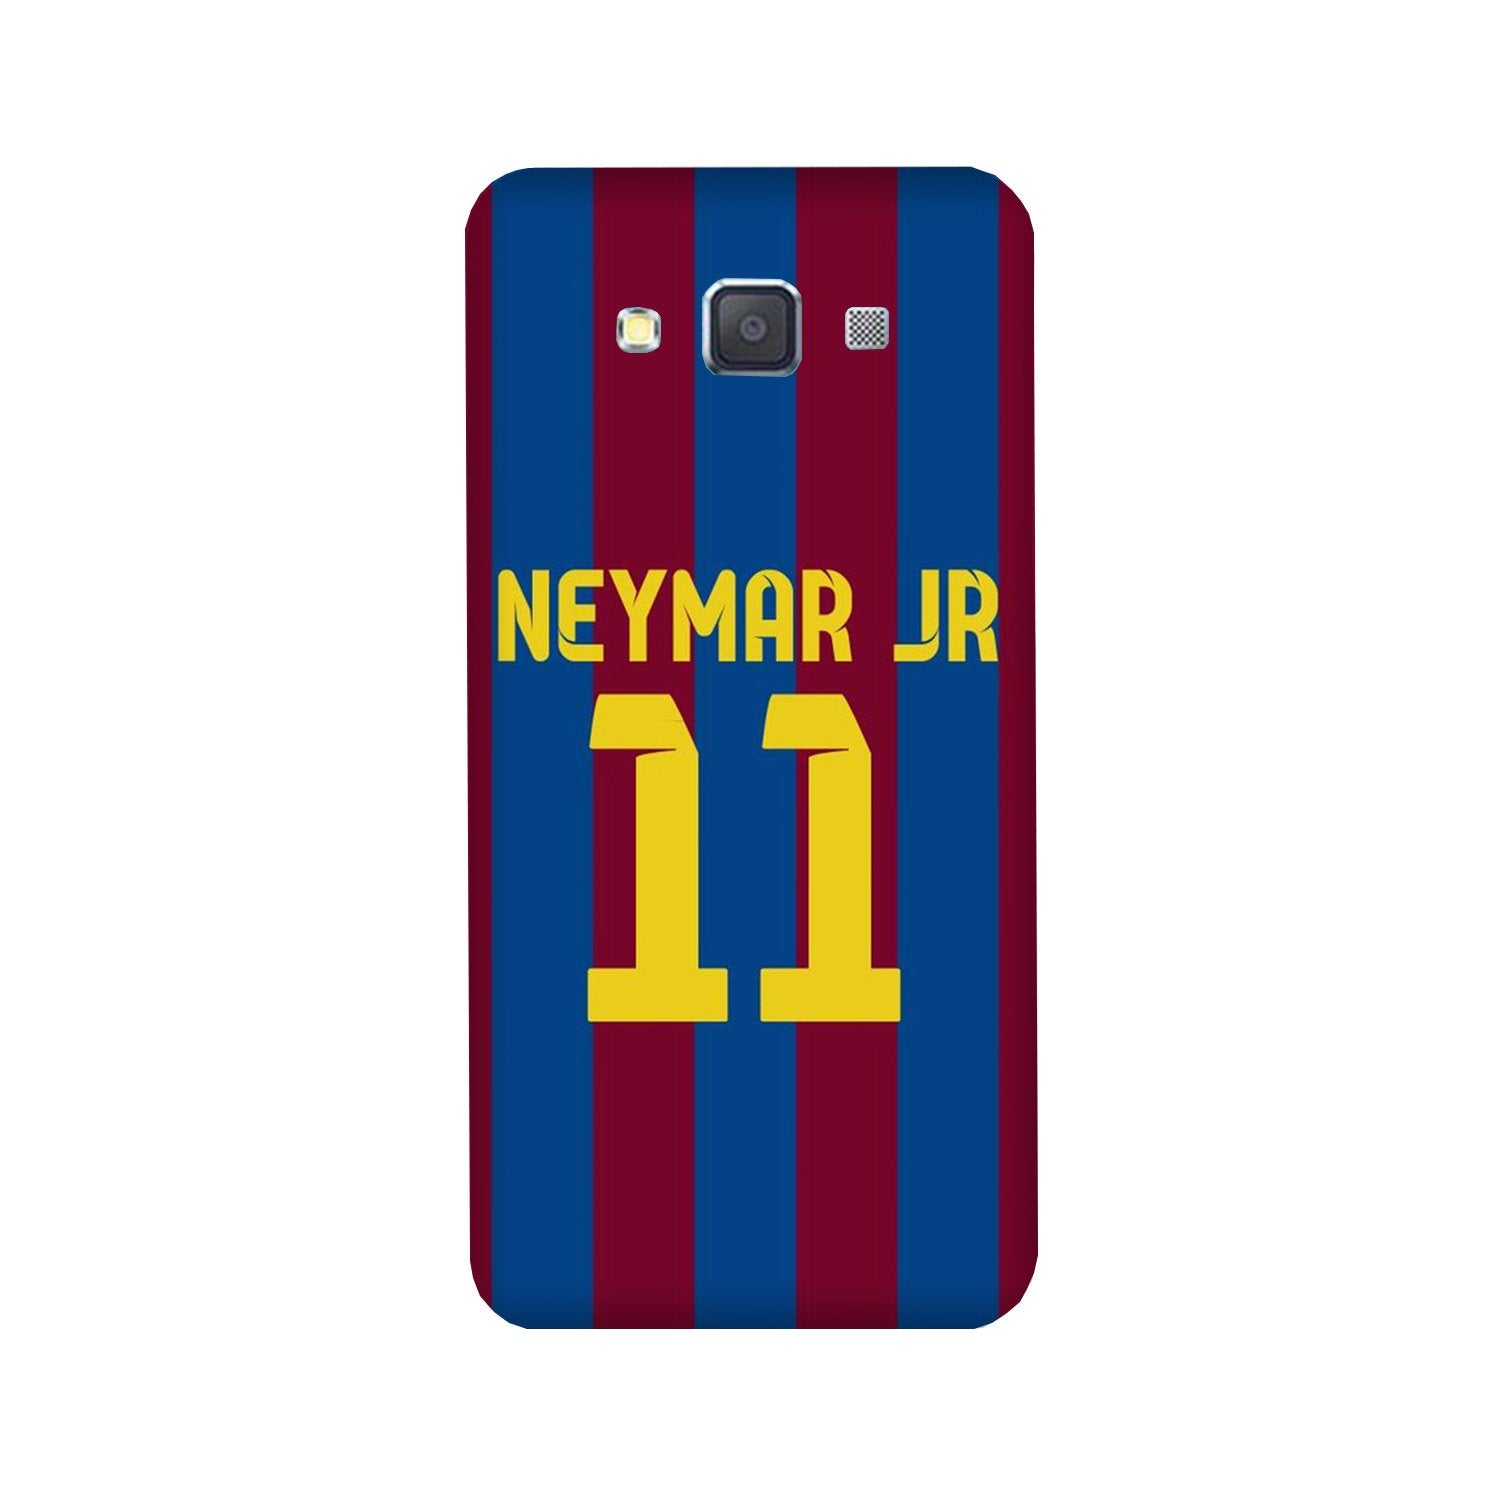 Neymar Jr Case for Galaxy A3 (2015)  (Design - 162)